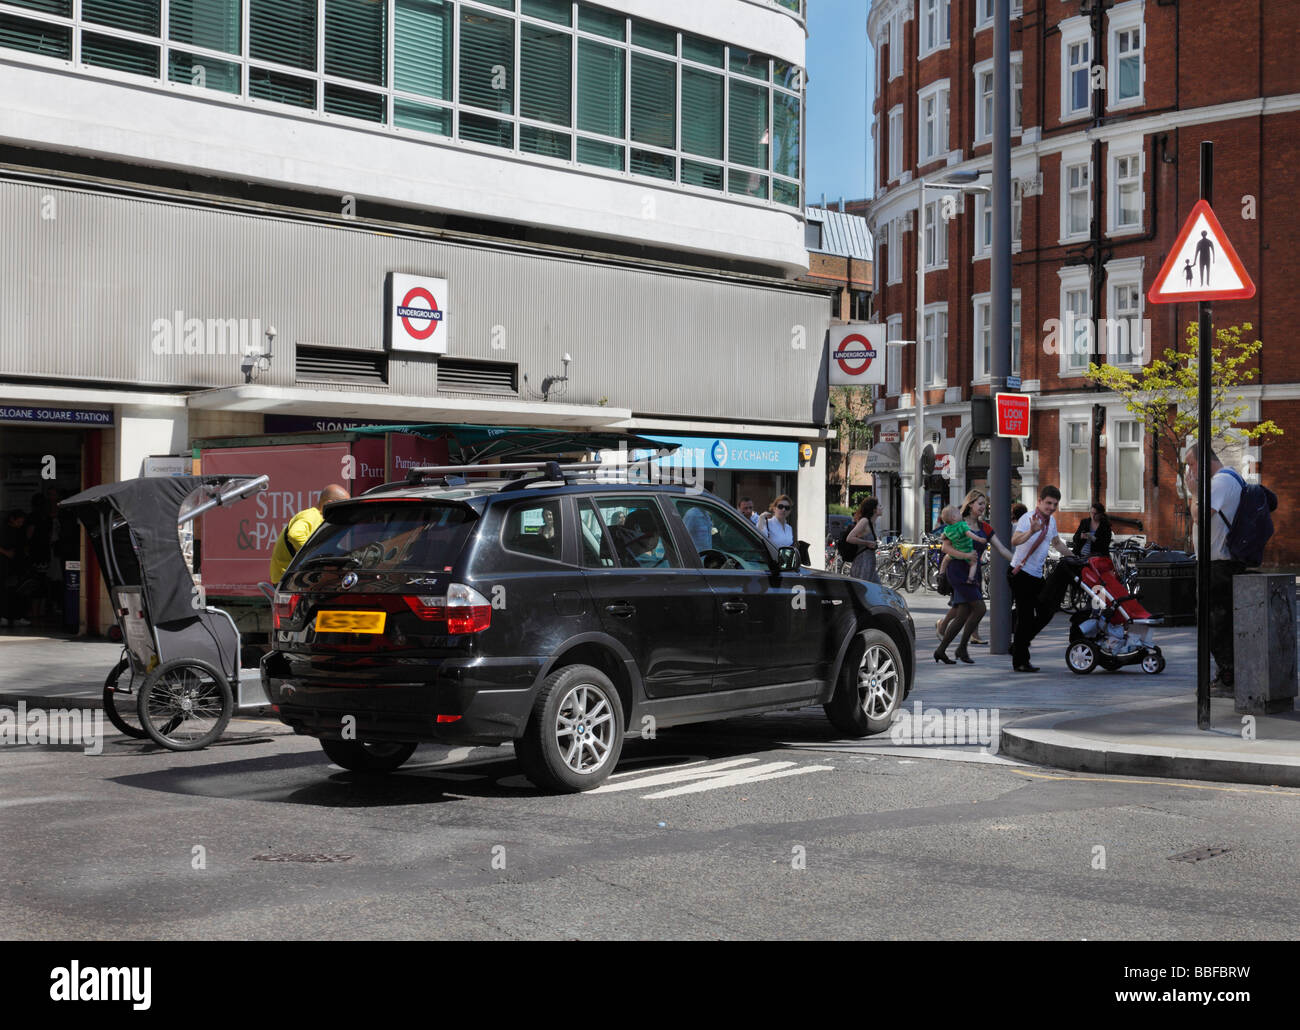 Espace partagé plan de circulation. Sloane Square, Chelsea, Londres, Angleterre, Royaume-Uni. Banque D'Images